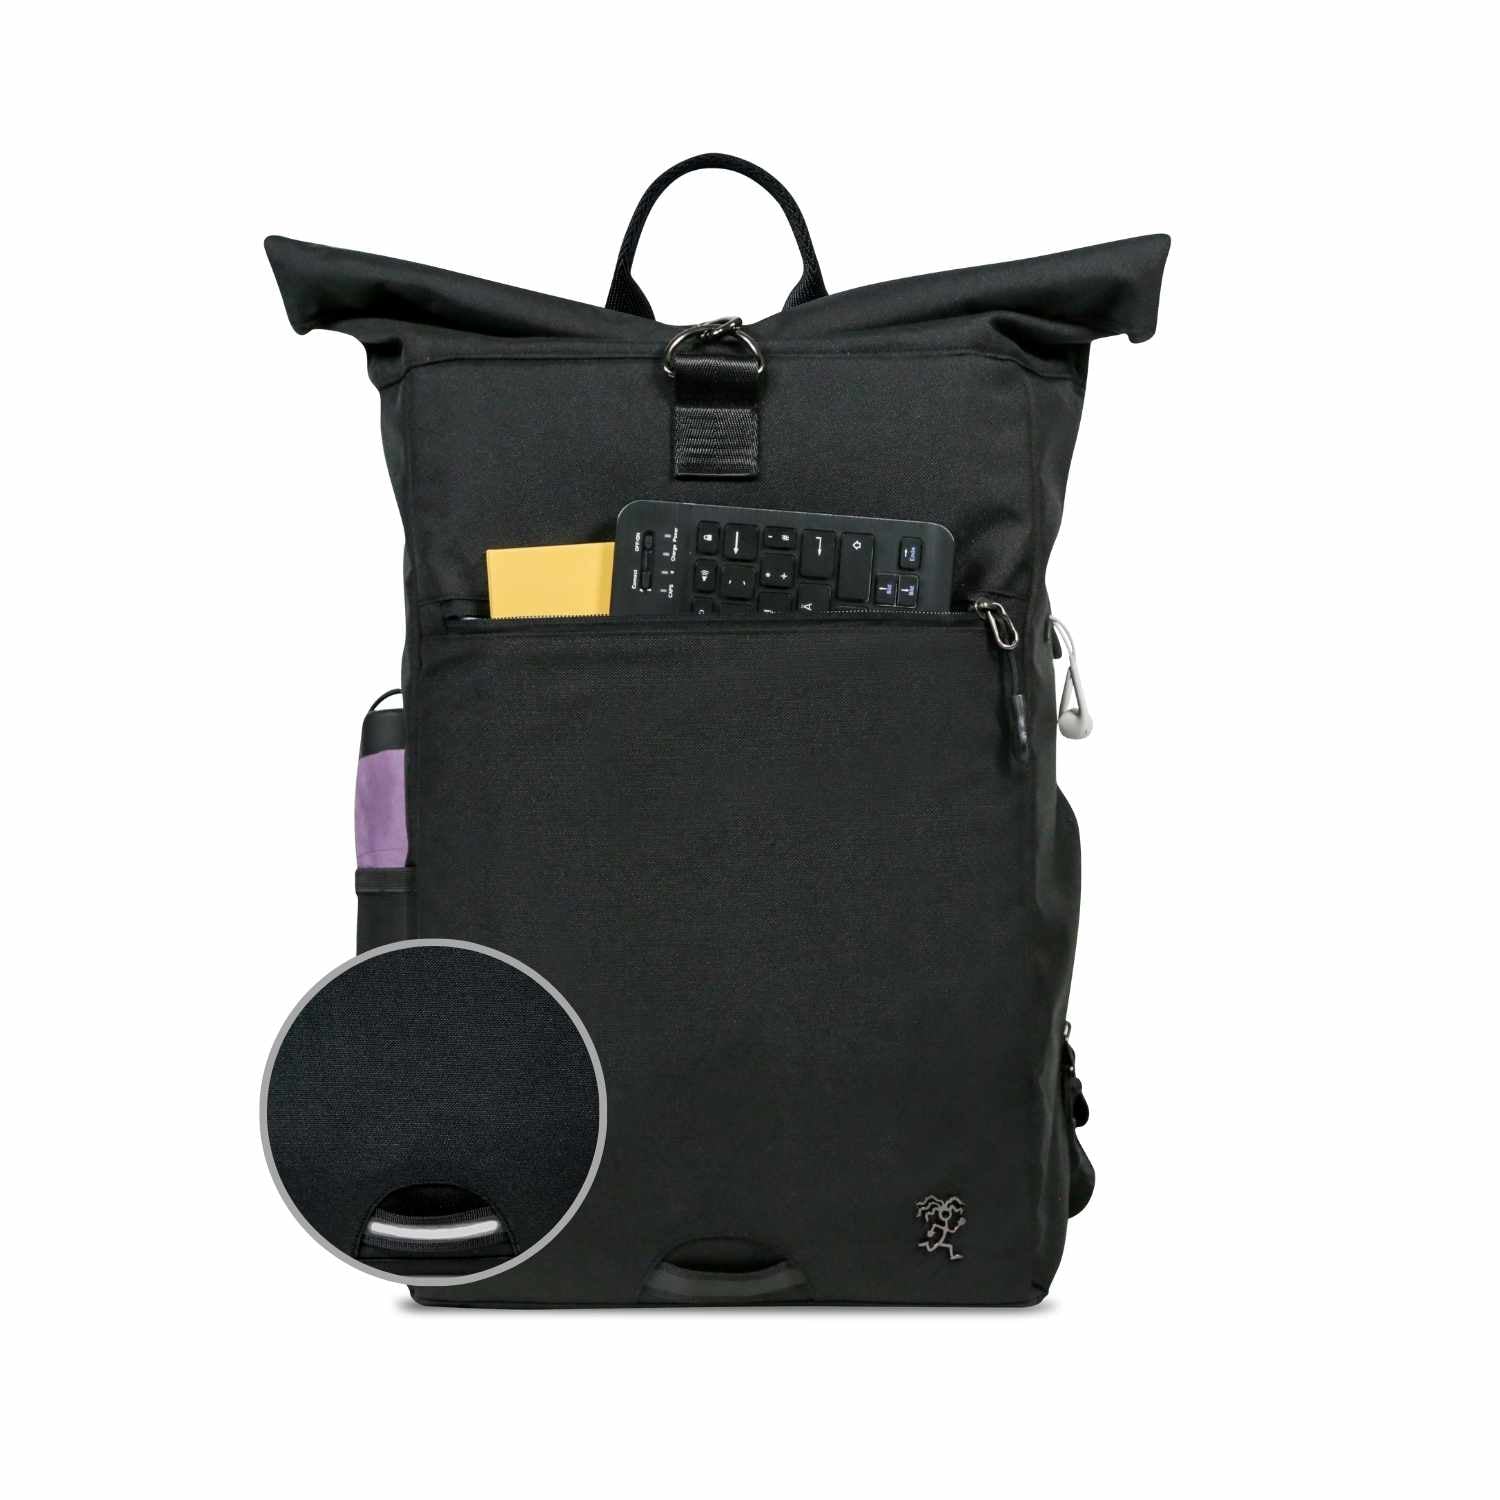 Vorderansicht des bepackten schwarzen FUCHS und REBELL PIET Rolltop Rucksacks mit Regenschirm, Tastatur und Buch und reflektierendem Riemen auf der Vorderseite.